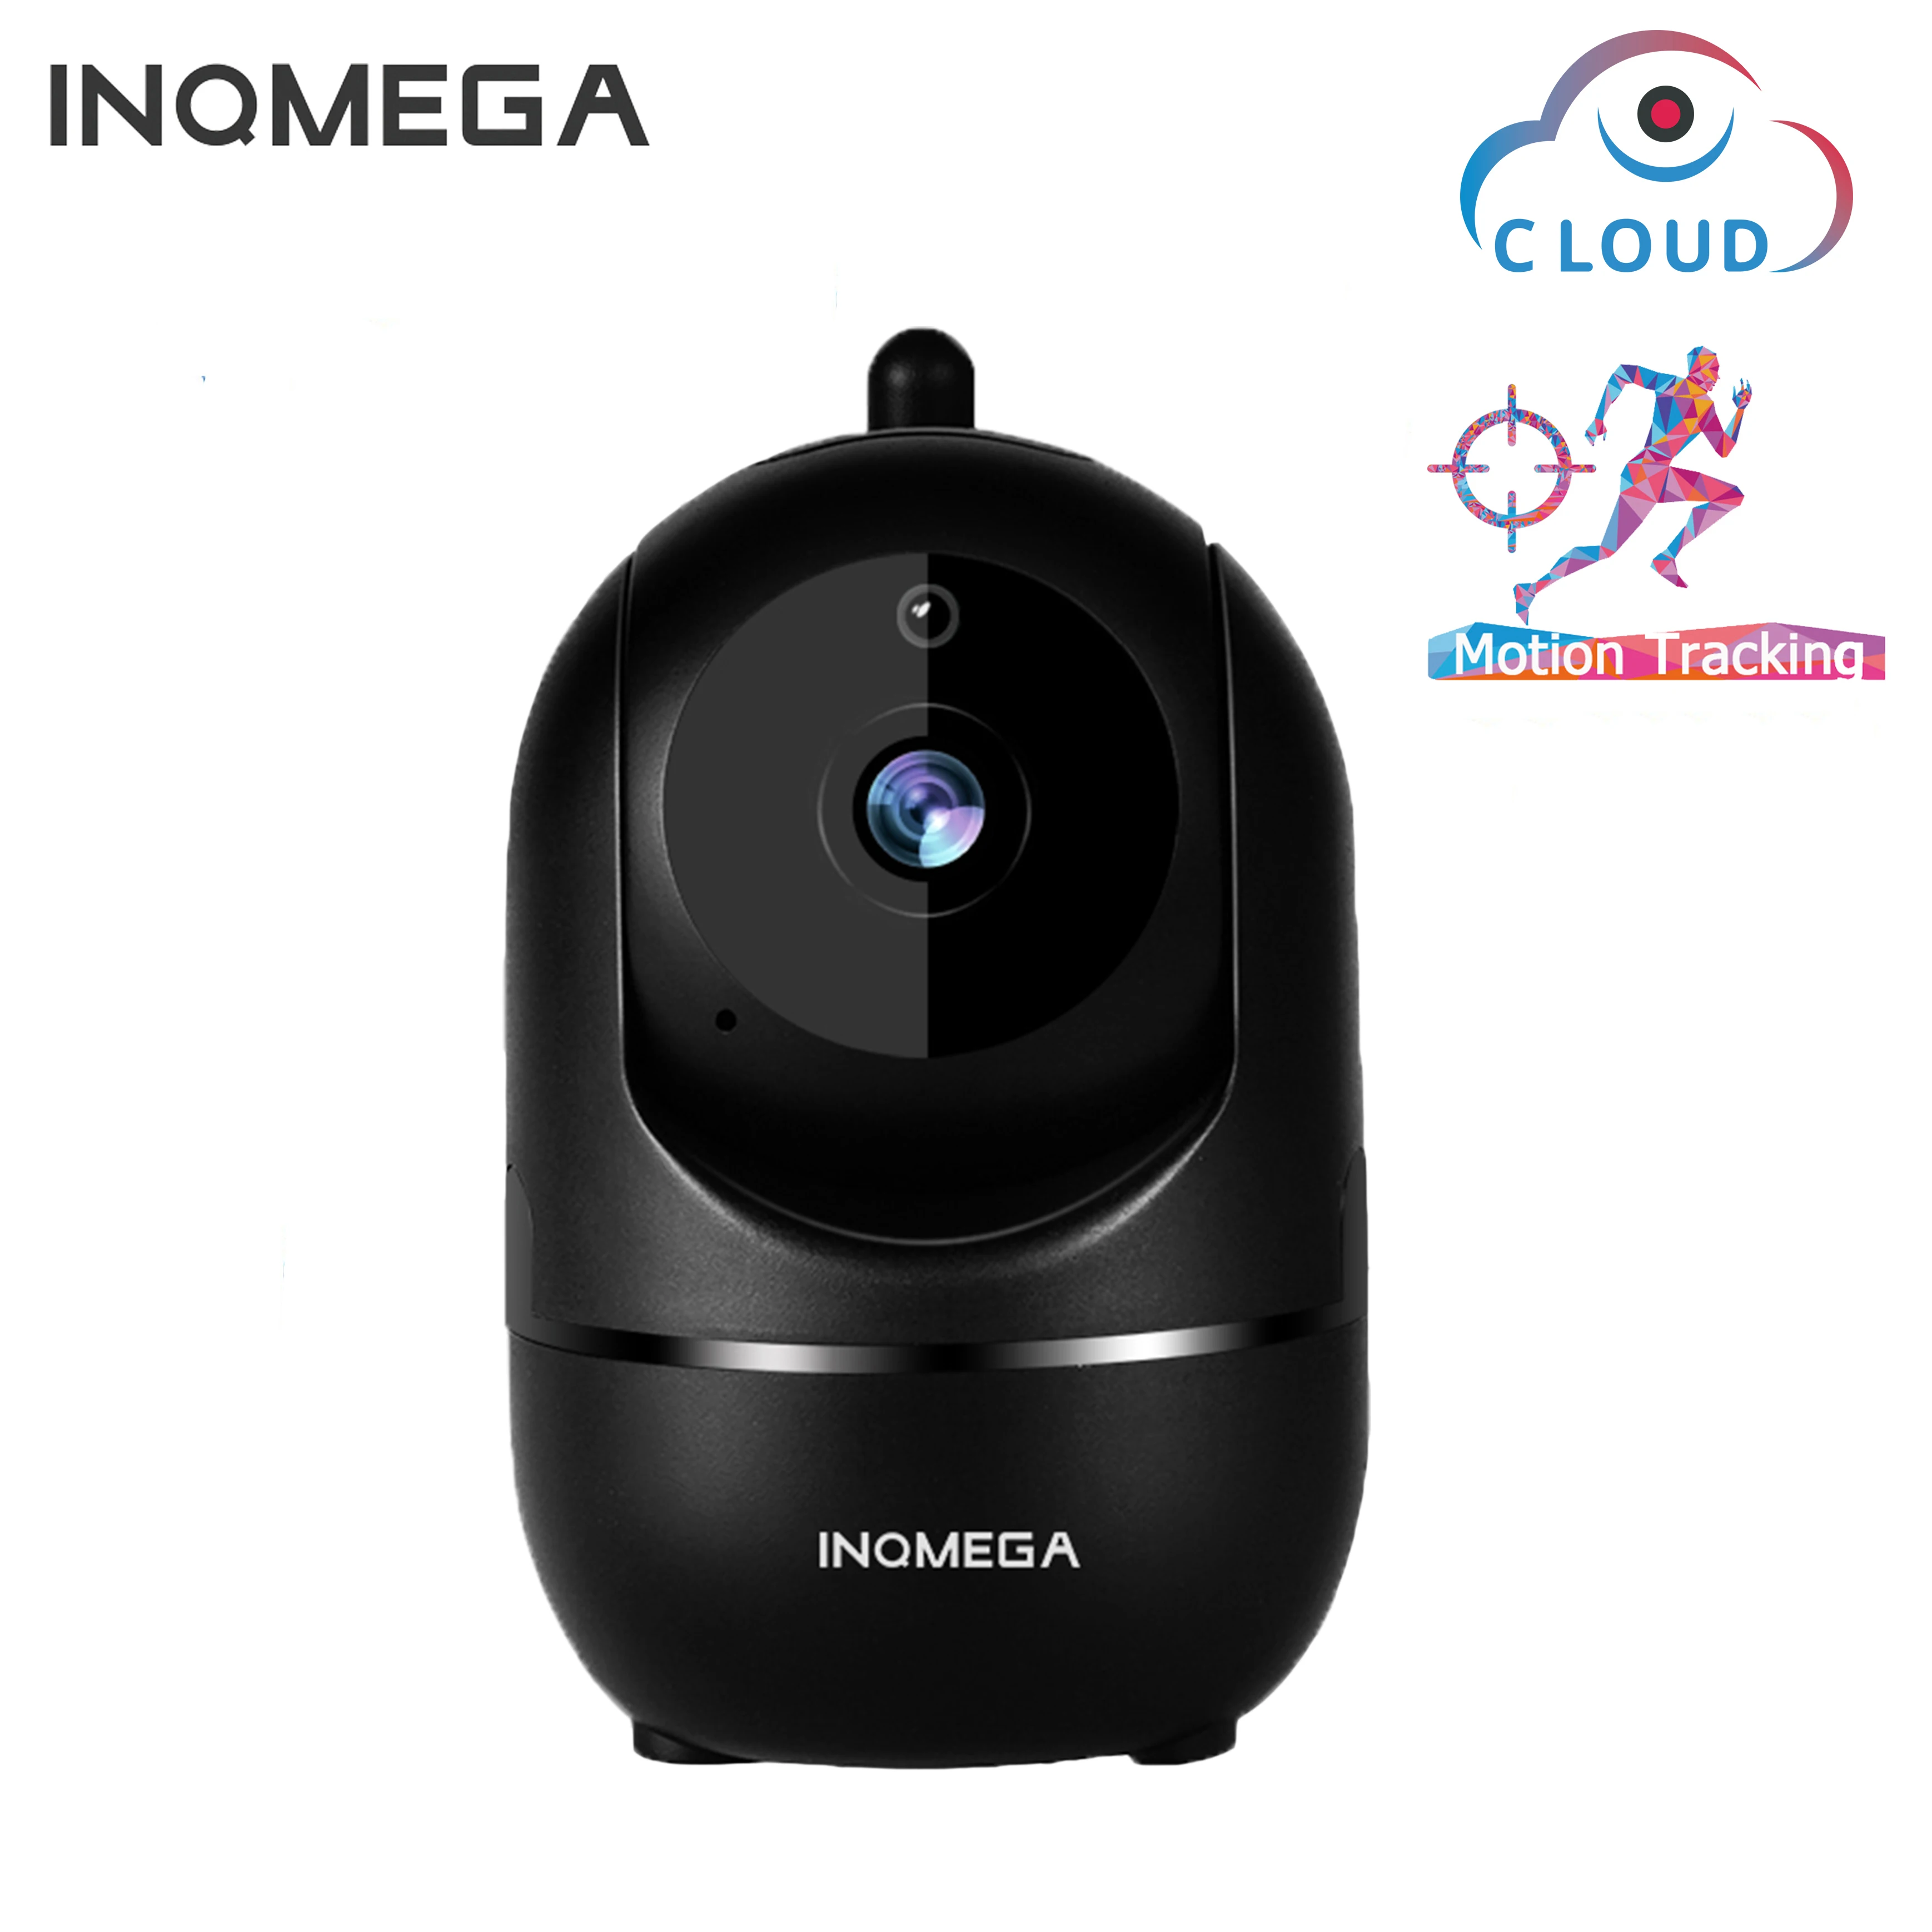 

INQMEGA Wi-Fi Видеоняни и радионяни Камера 1080P видео Детские спальные-няня камера-двухстороннее аудио Ночное видение домашней безопасности радио...